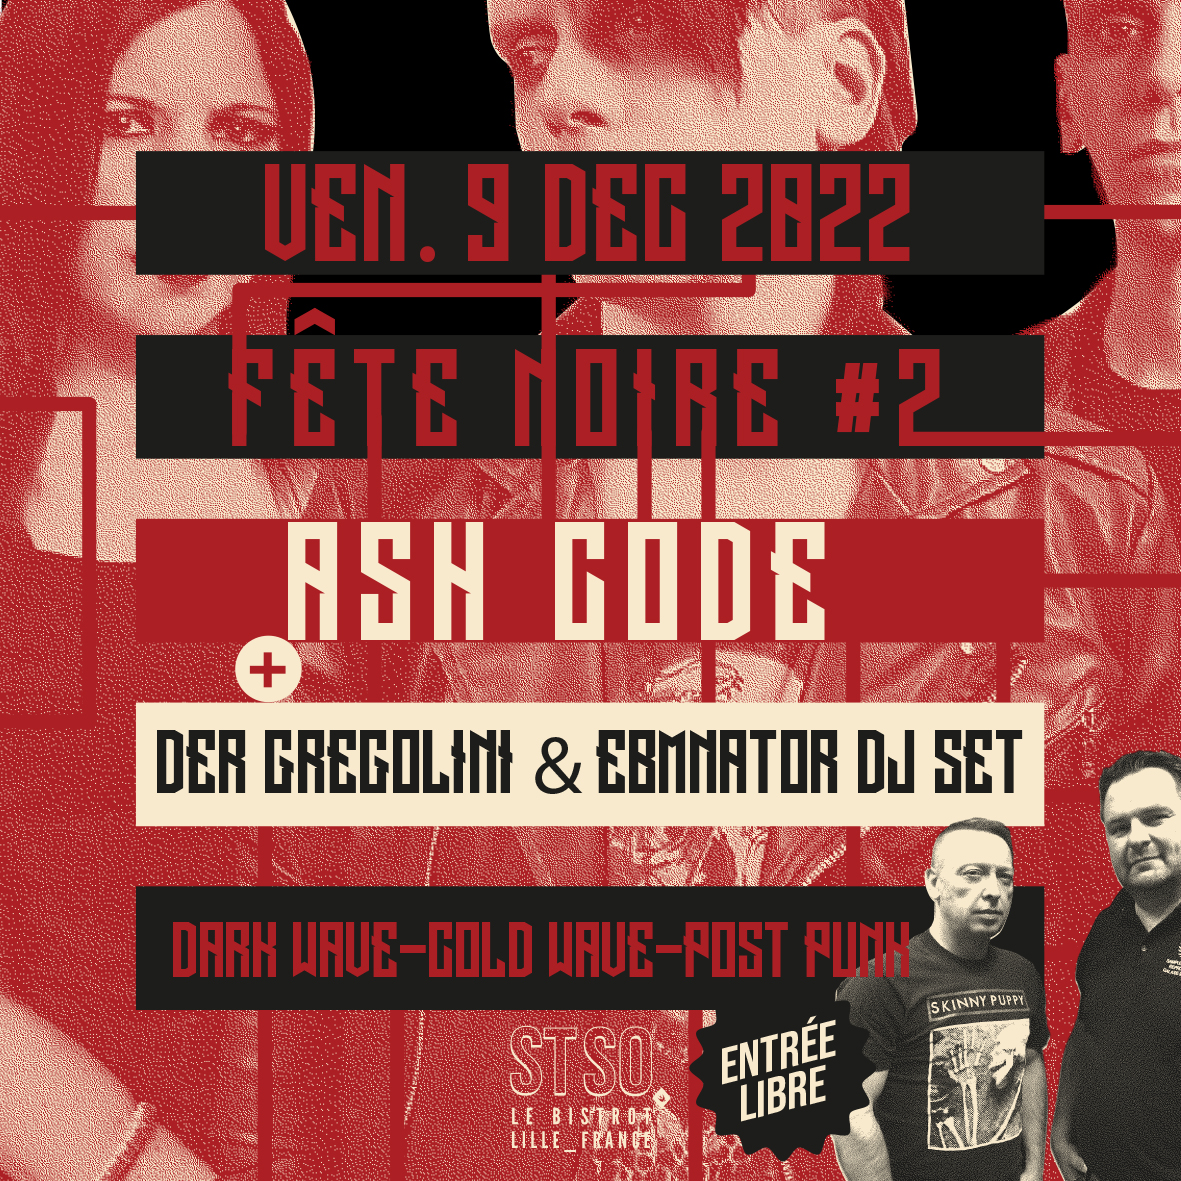 Fête noire #2 – Ash Code + Der Gregolini & Ebmnator DJ set